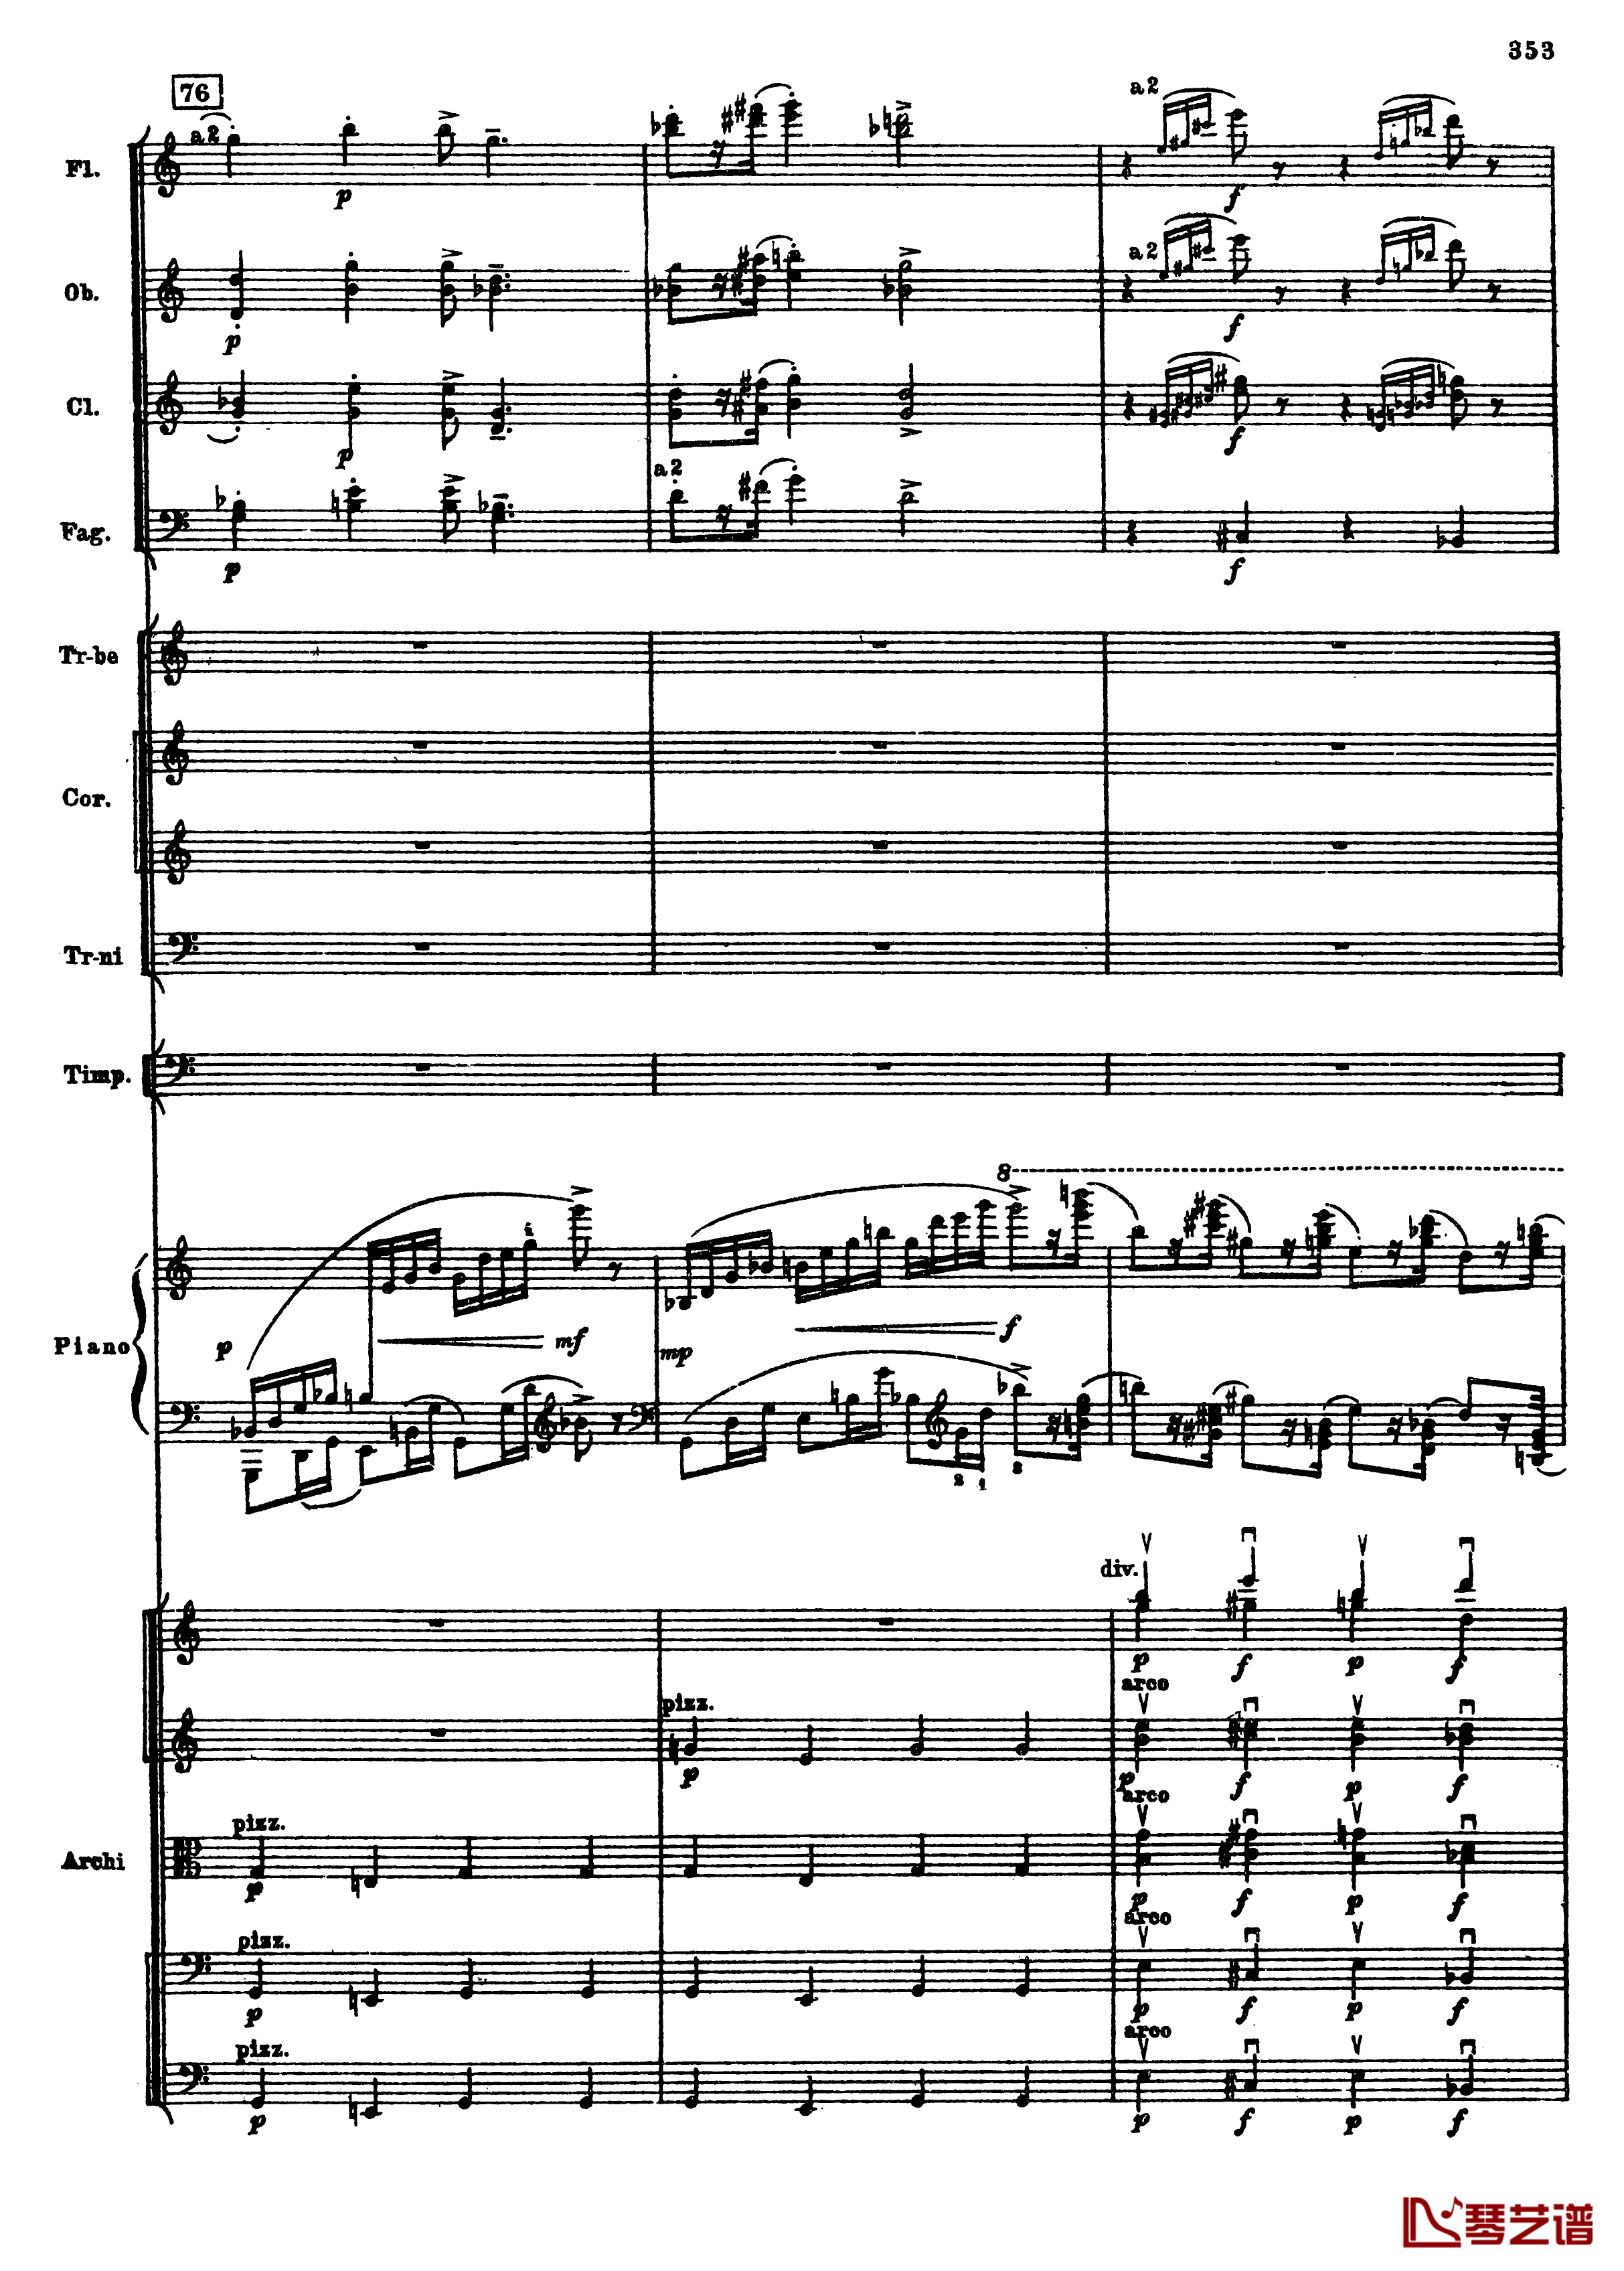 普罗科菲耶夫第三钢琴协奏曲钢琴谱-总谱-普罗科非耶夫85